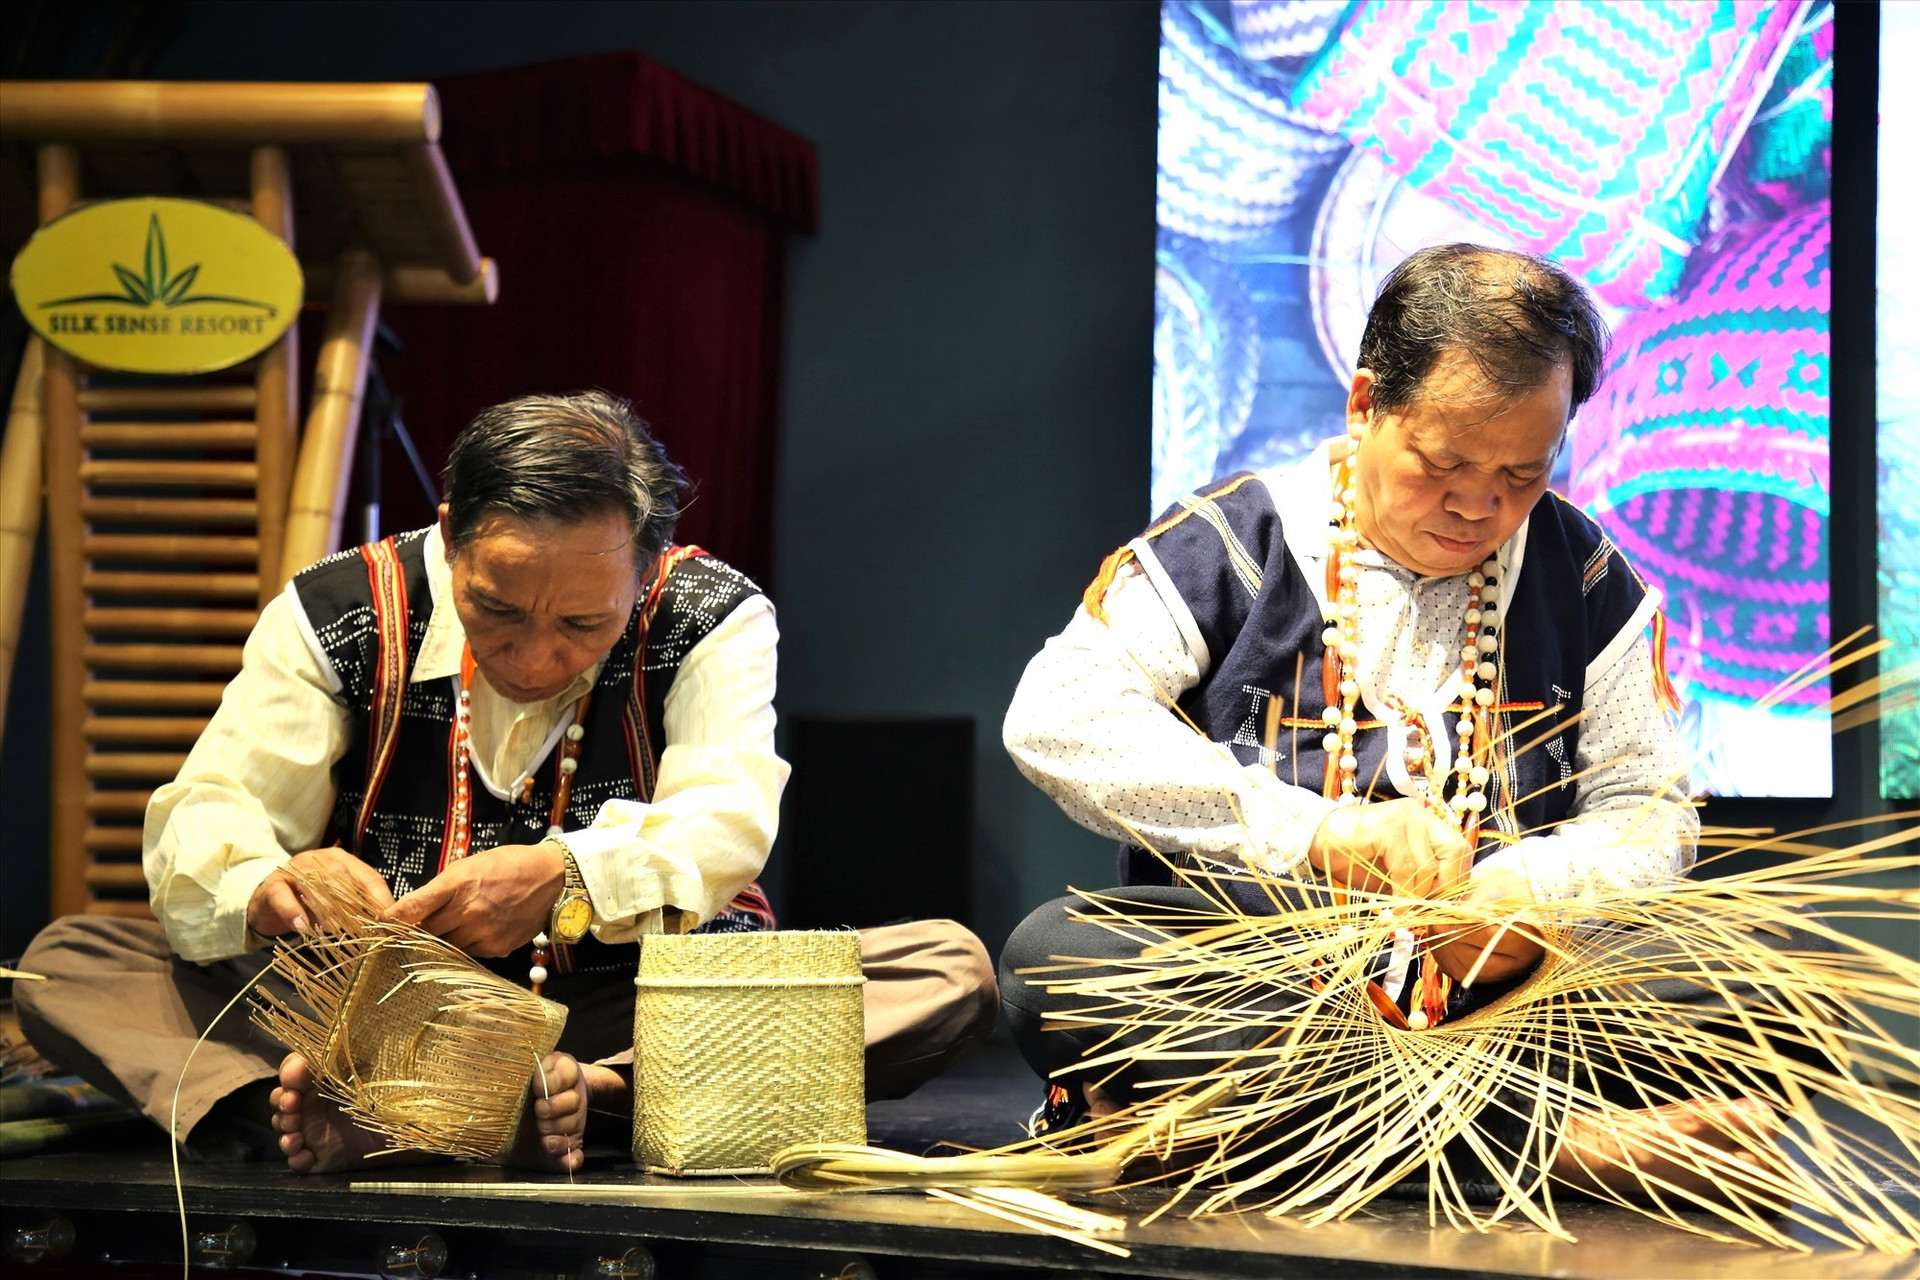 Nhiều làng nghề truyền thống được phục hồi và phát triển thành sản phẩm du lịch từ sự nỗ lực của các già làng và người có uy tín. Ảnh: Đ.N